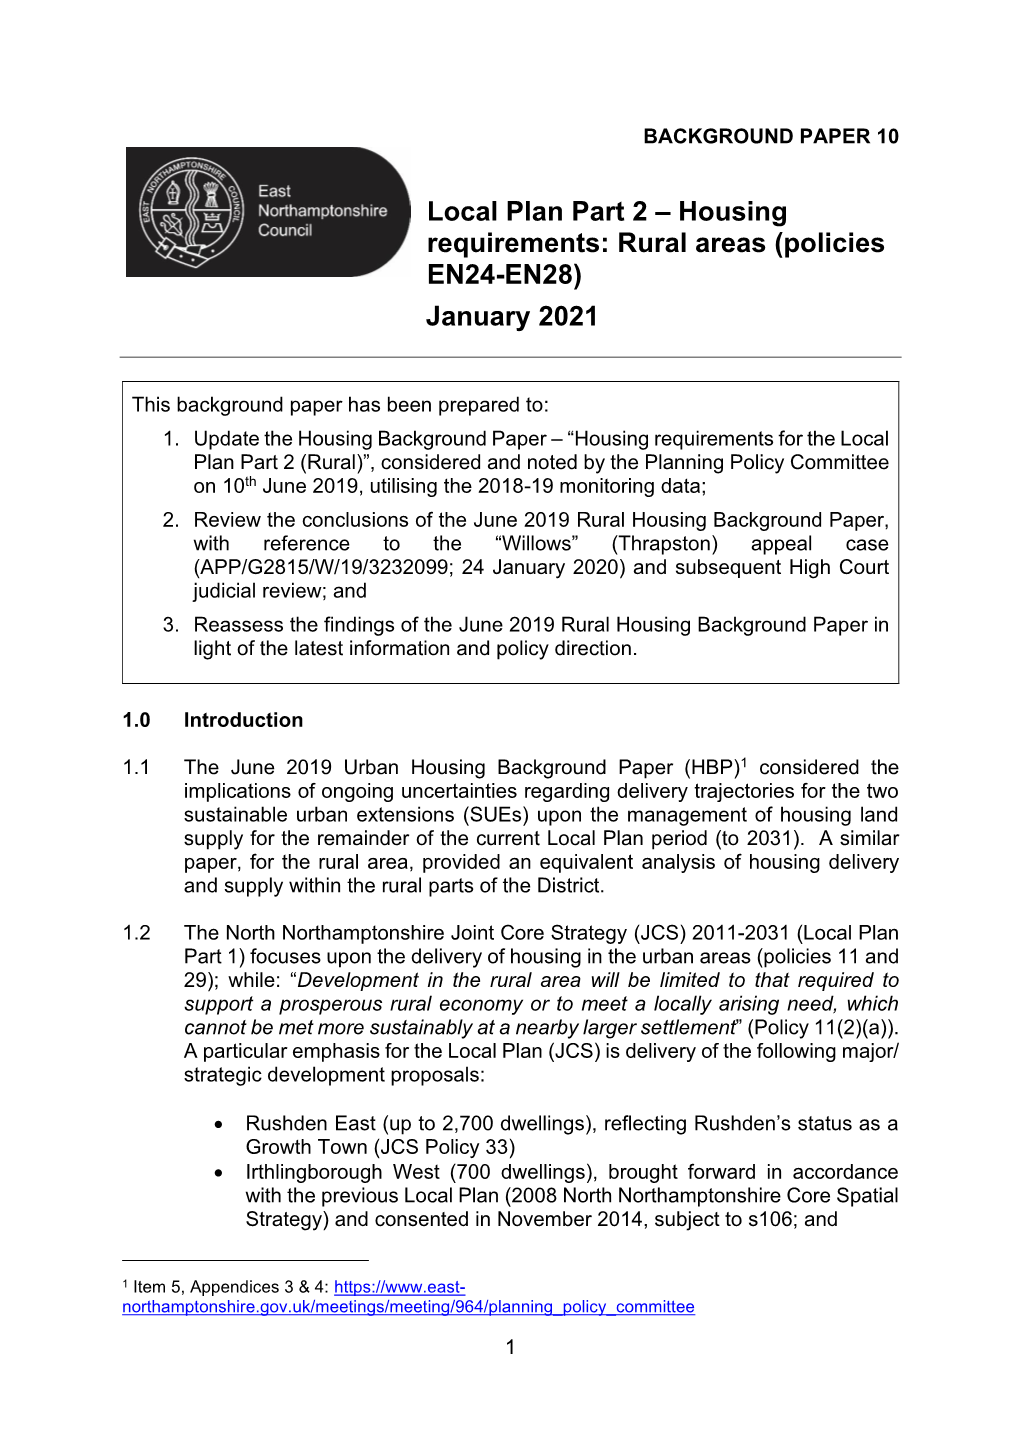 Housing Requirements: Rural Areas (Policies EN24-EN28) January 2021